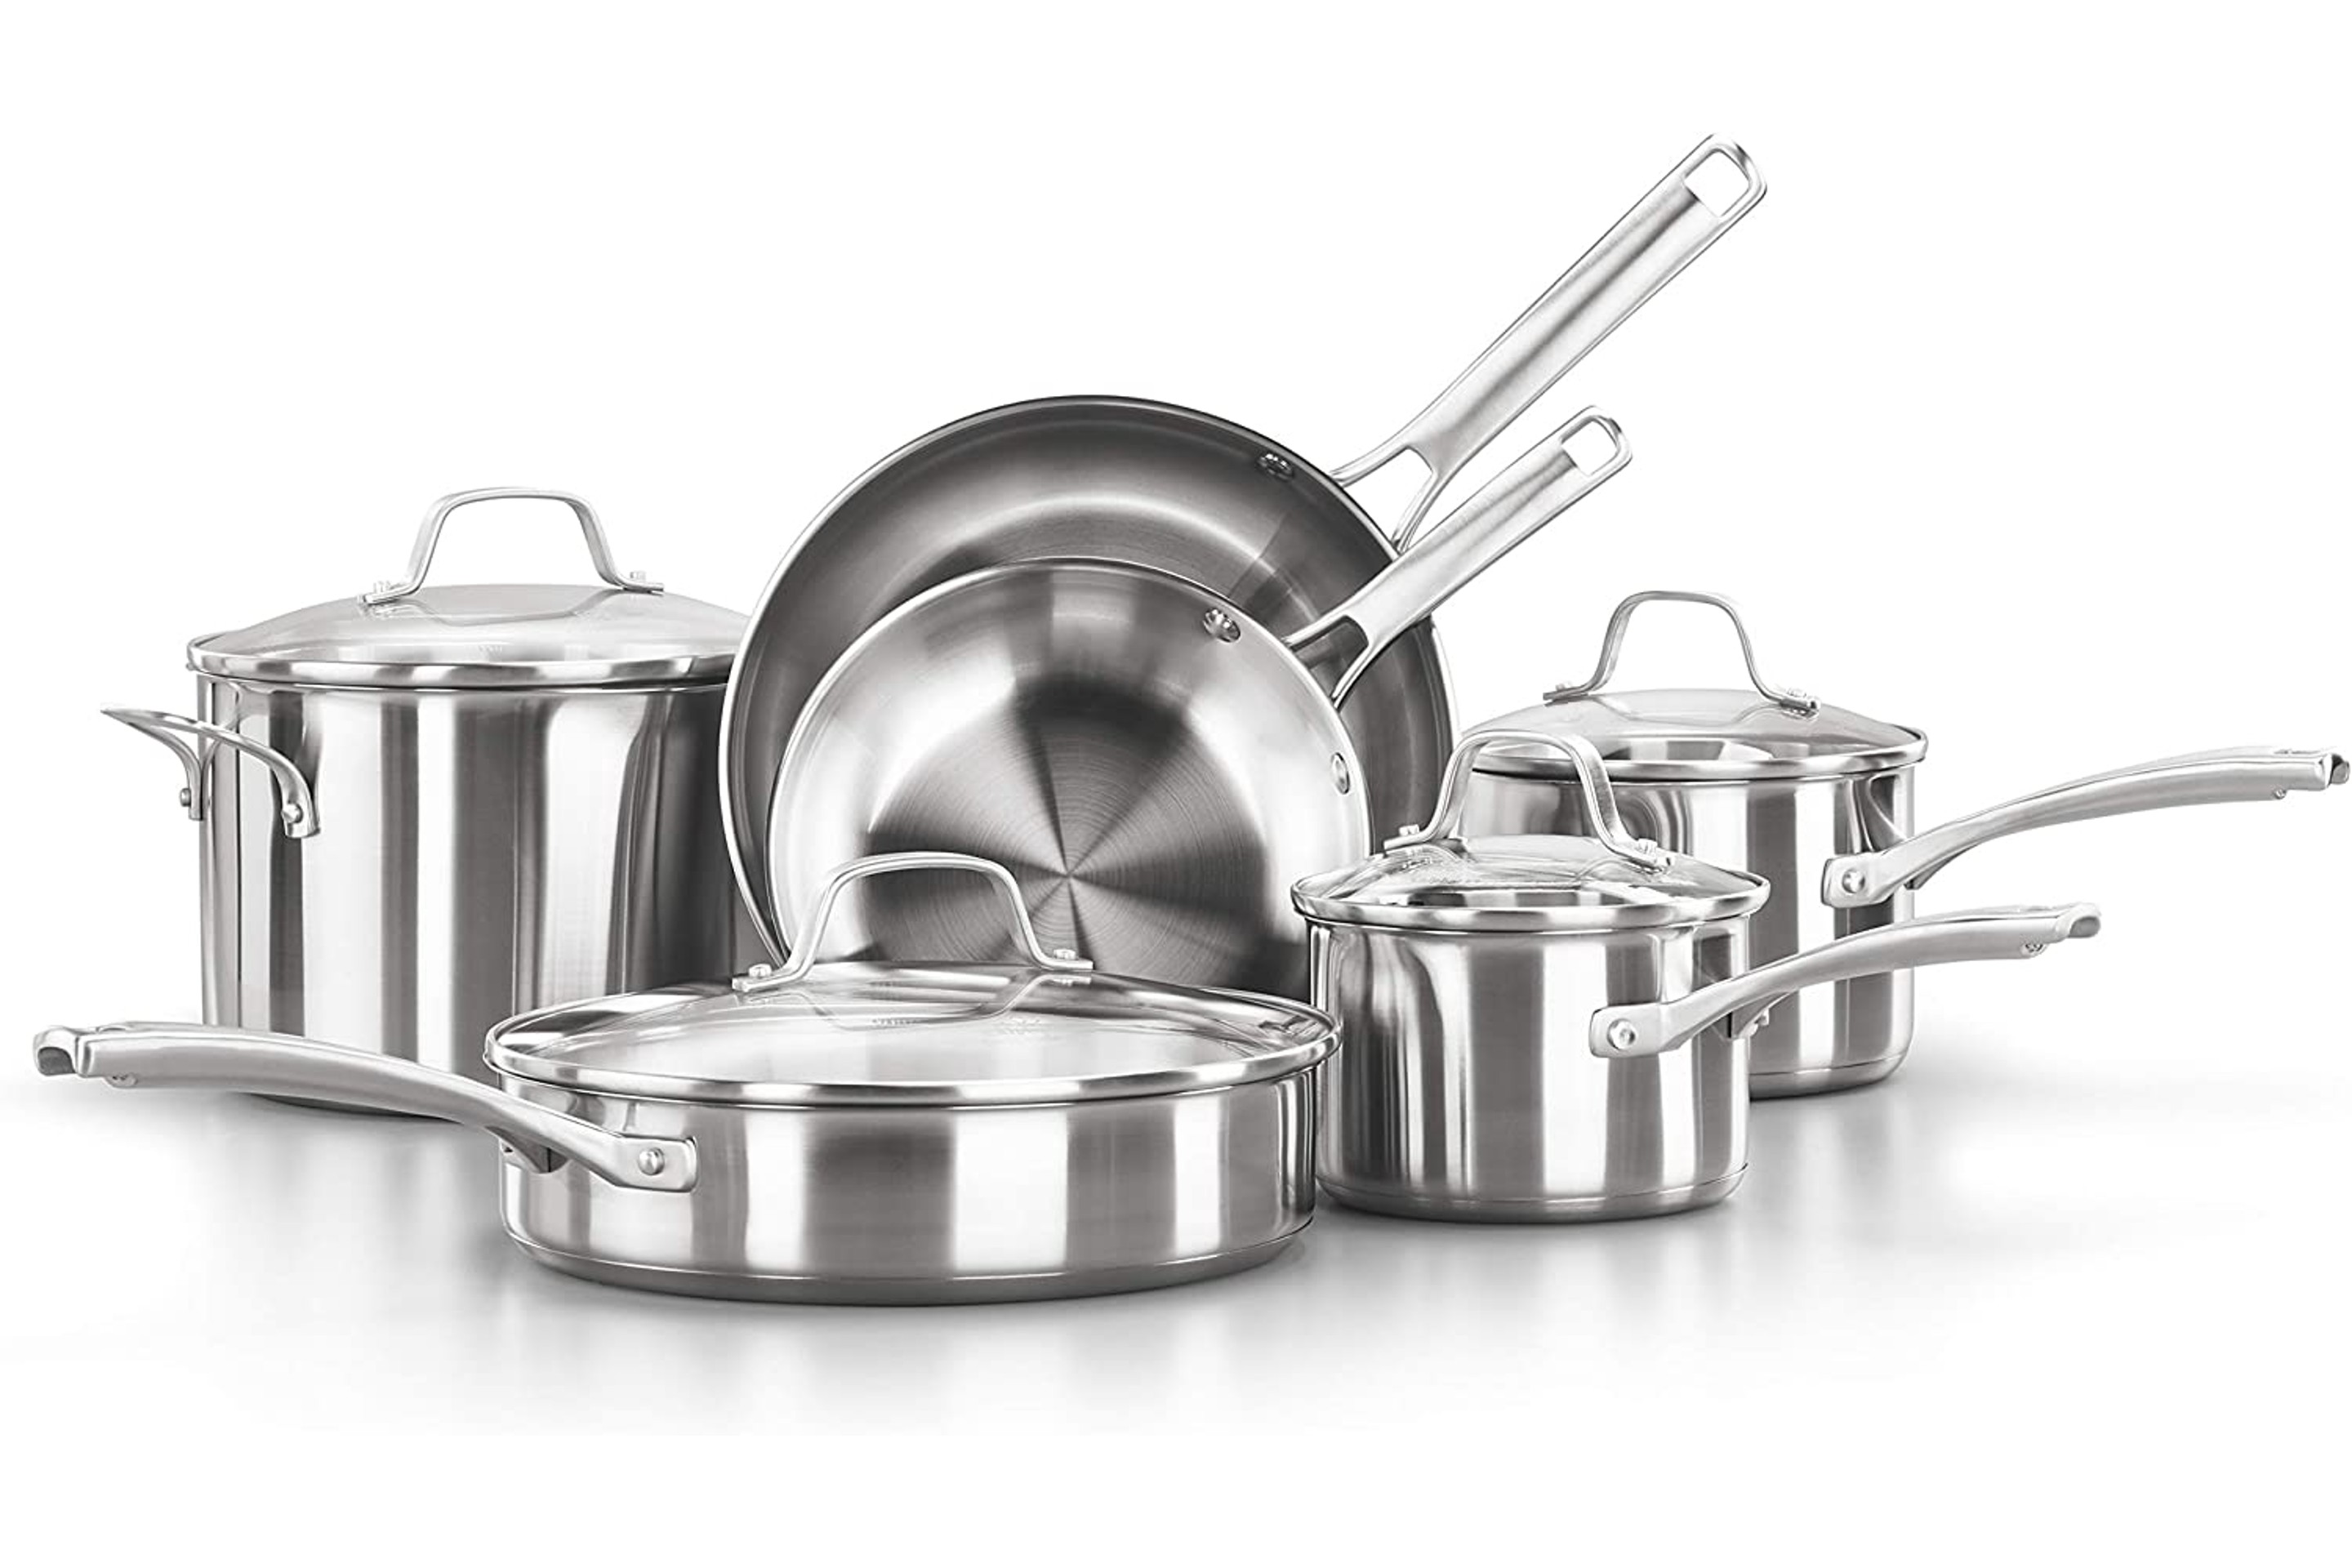 Calphalon 10-Piece Stainless Steel Cookware Set